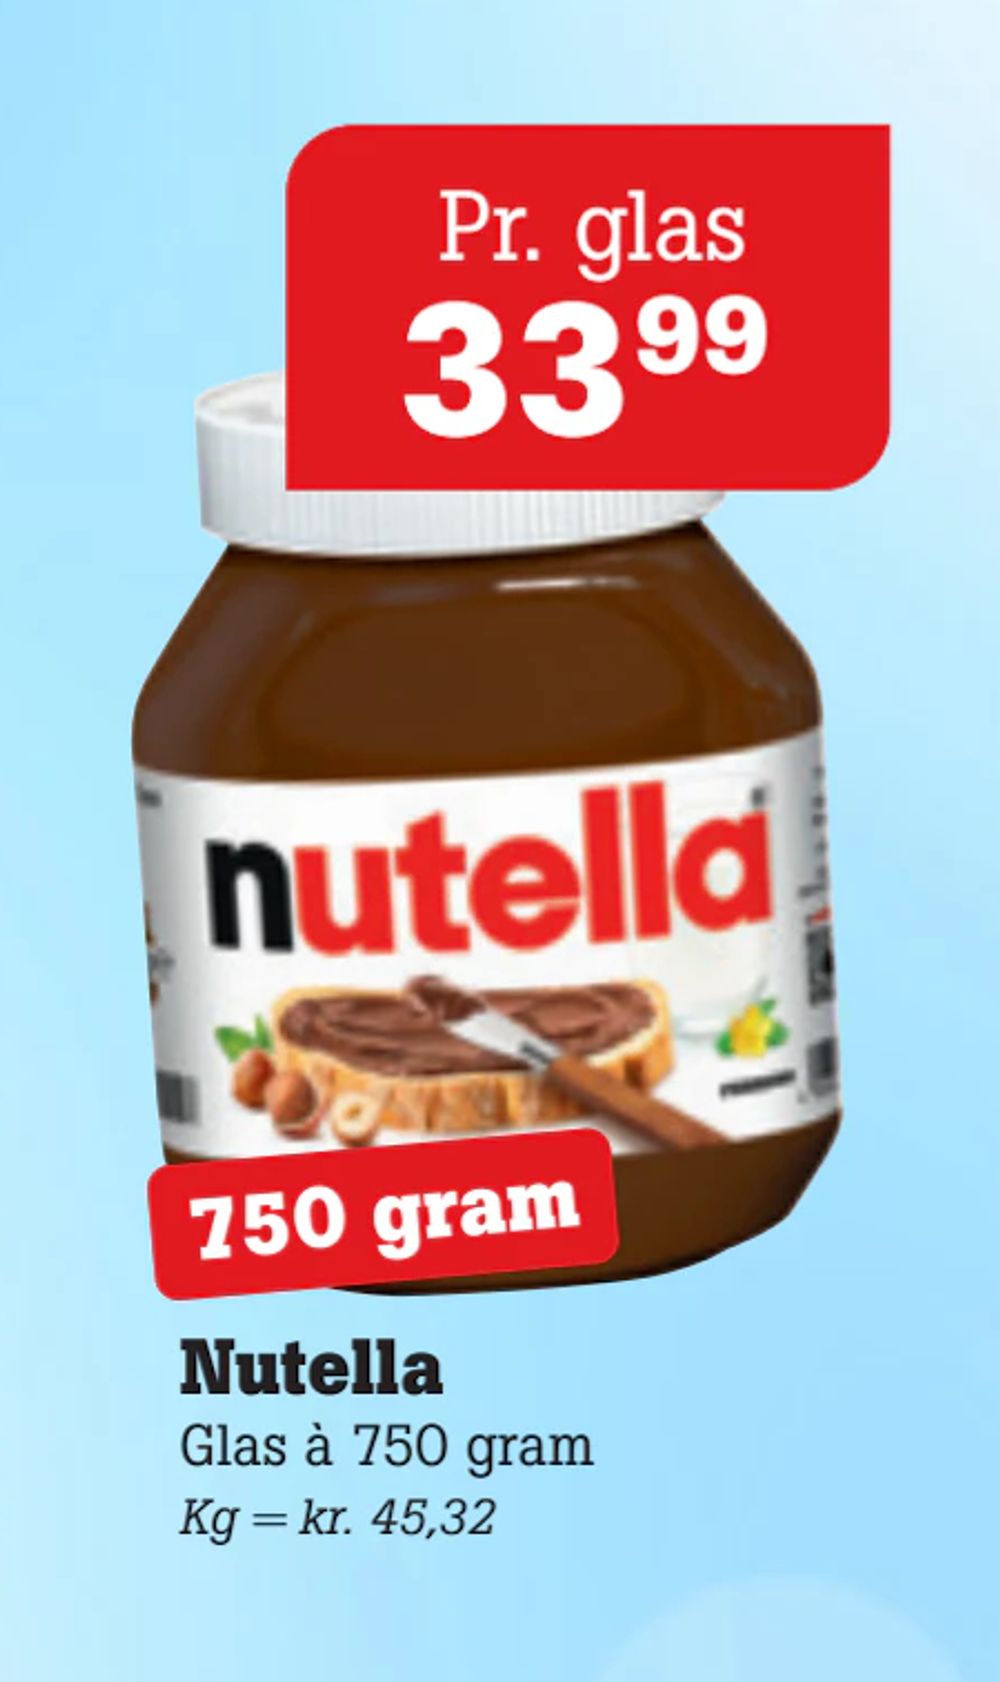 Tilbud på Nutella fra Poetzsch Padborg til 33,99 kr.